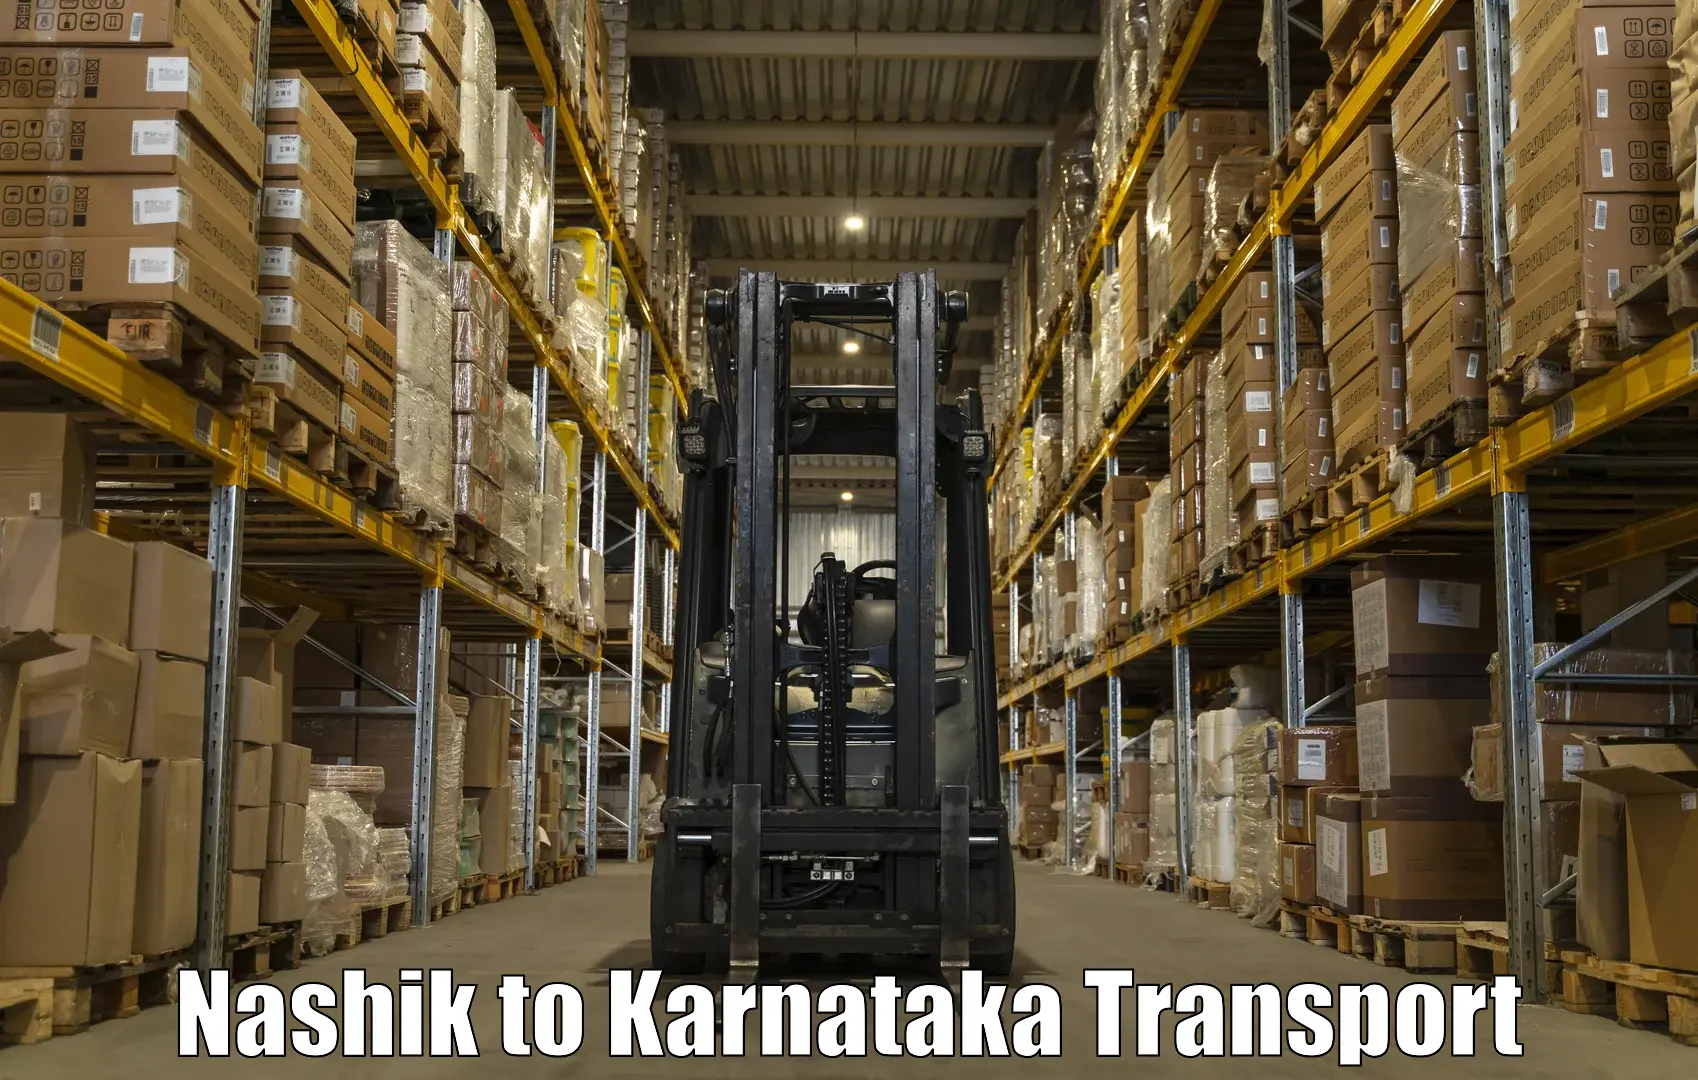 Bike shipping service Nashik to Maramanahalli